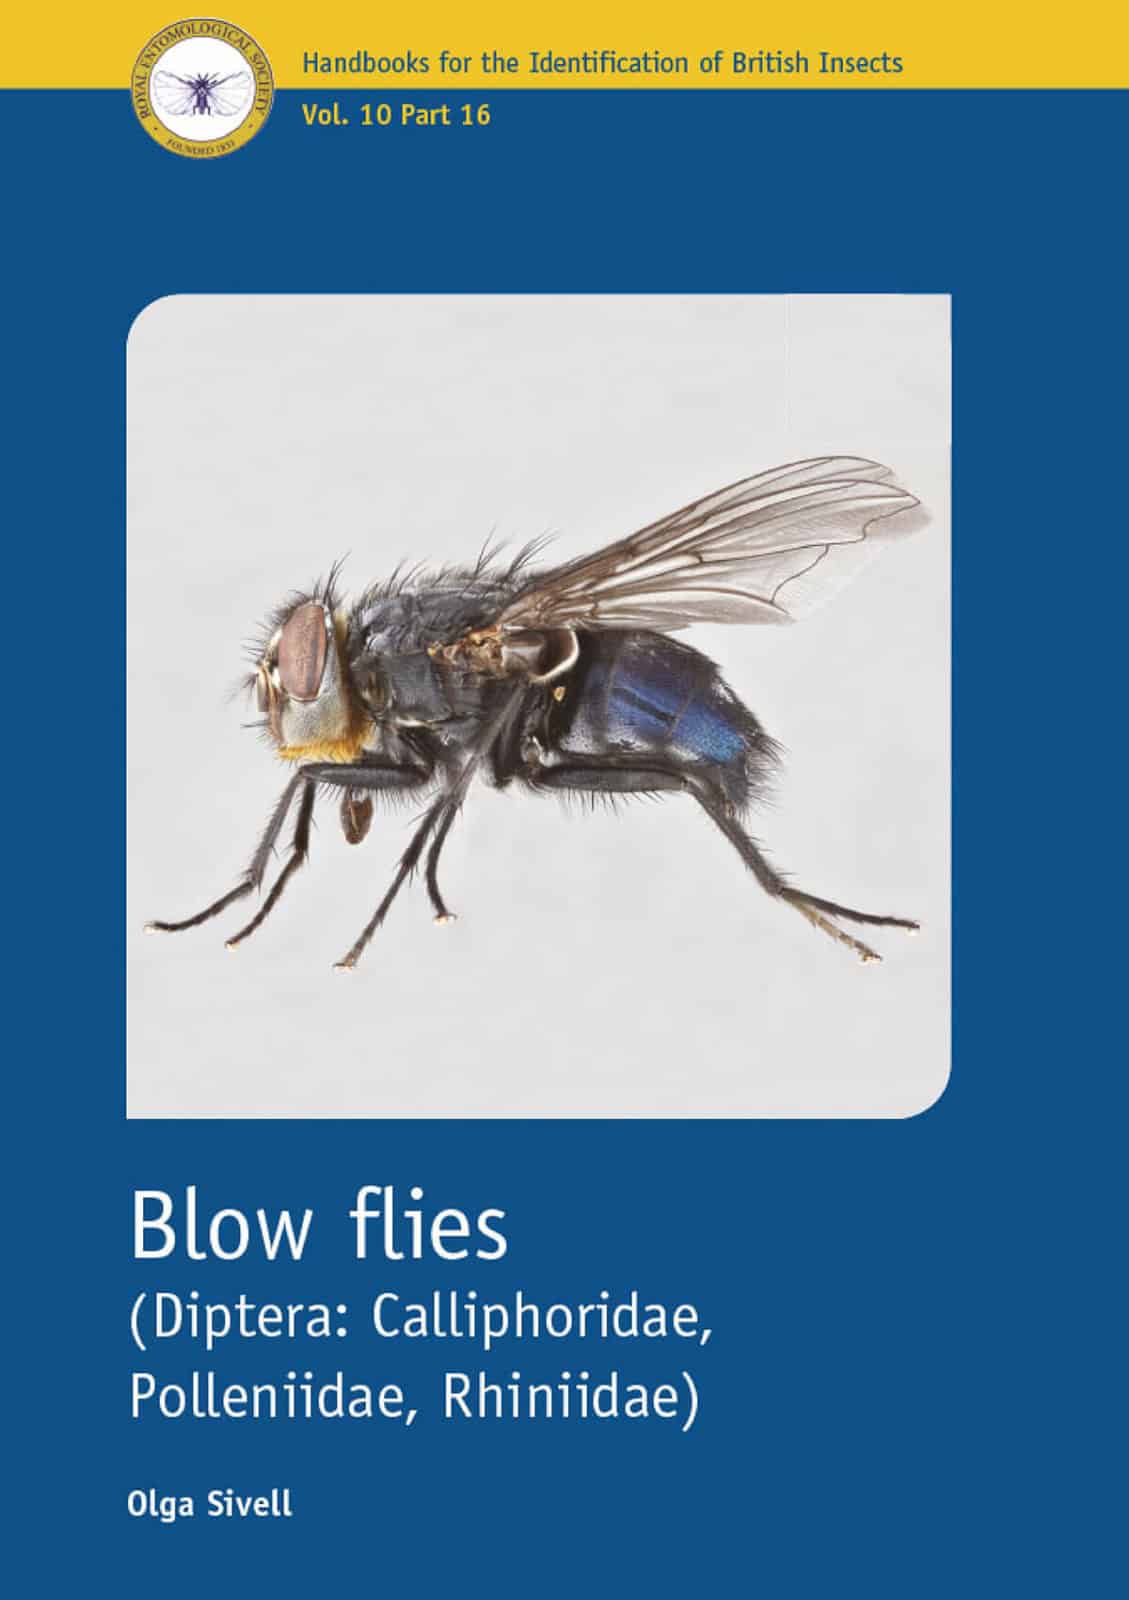 Blow flies